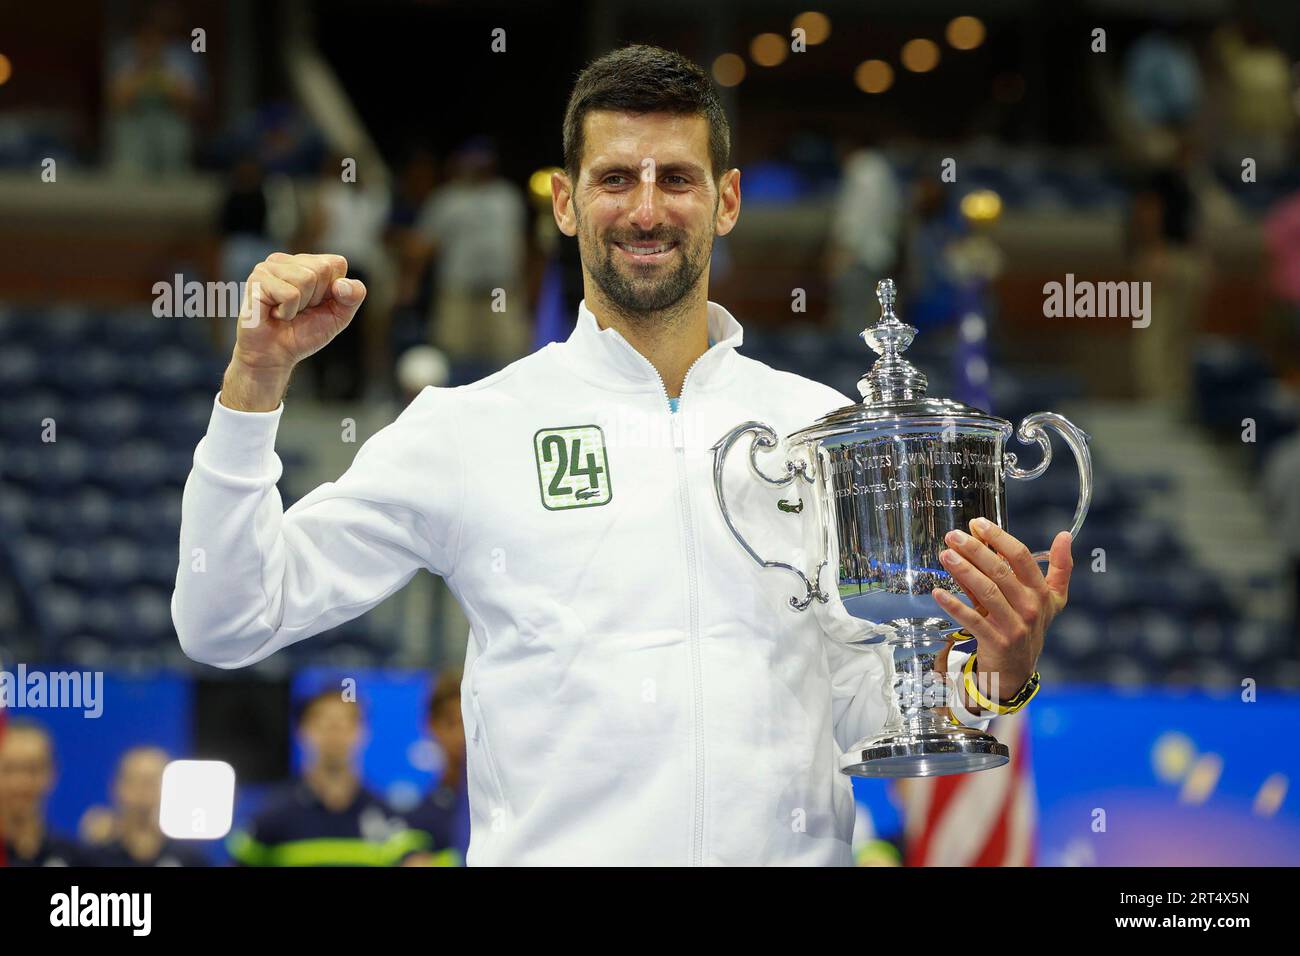 New York, États-Unis, 10 septembre 2023. Le joueur de tennis serbe Novak Djokovic détient le trophée US Open 2023 après le 24e tournoi historique. Victoire du Grand Chelem au Centre national de tennis Billie Jean King le dimanche 10 septembre 2023. © Juergen Hasenkopf / Alamy Live News Banque D'Images